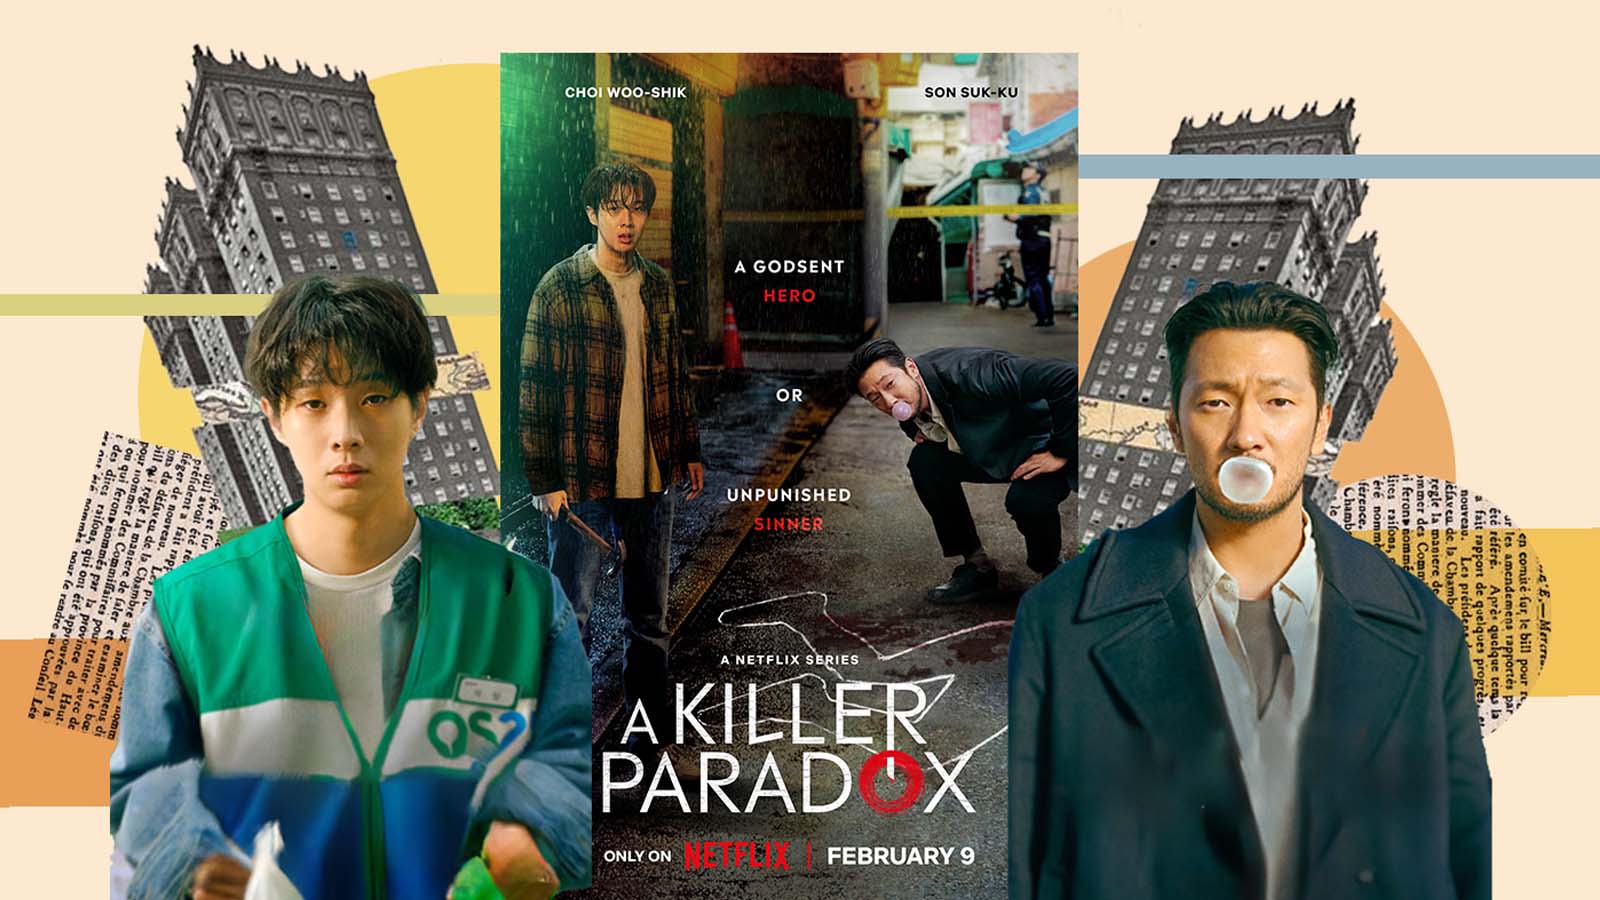 Un ragazzo si trova coinvolto in un intricato mistero dopo un omicidio accidentale in A killer paradox su Netflix